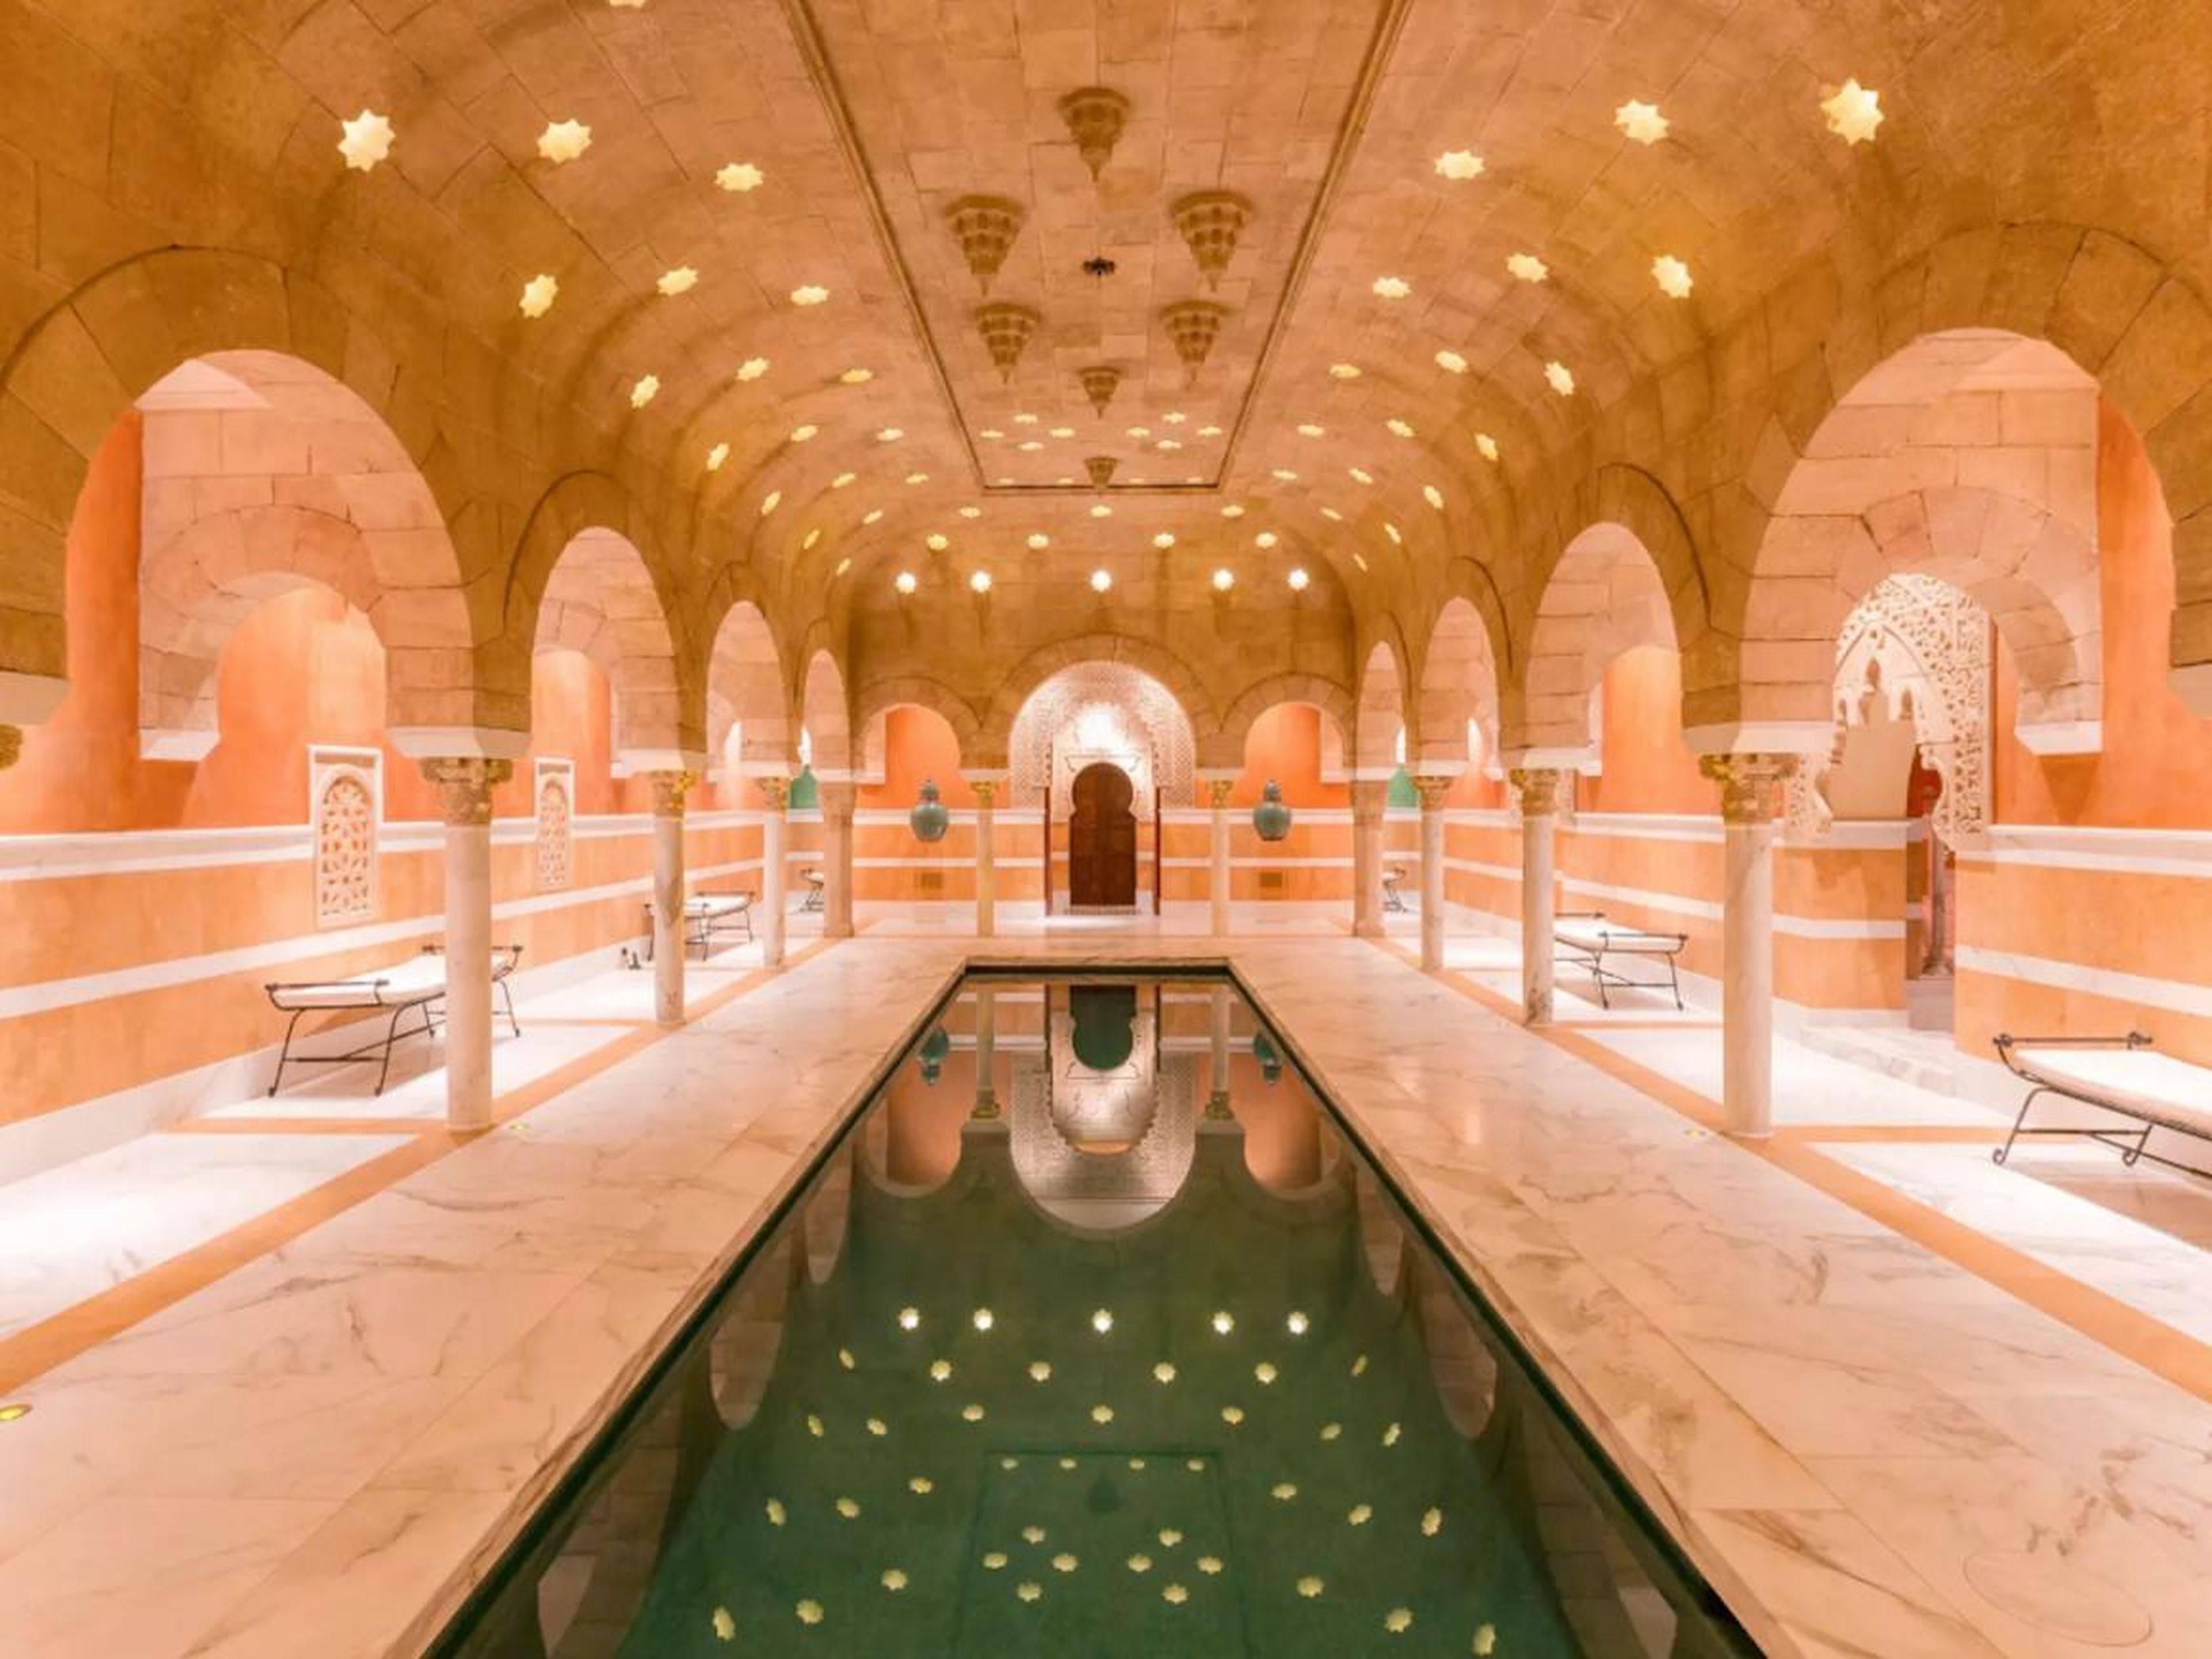 Un Hamam, un spa tradicional morisco, se encuentra bajo tierra y es una de las dos piscinas del sitio. El interior está hecho a mano de mármol importado y piedra arenisca; las baldosas venecianas de oro de 24 quilates se alinean en el espacio